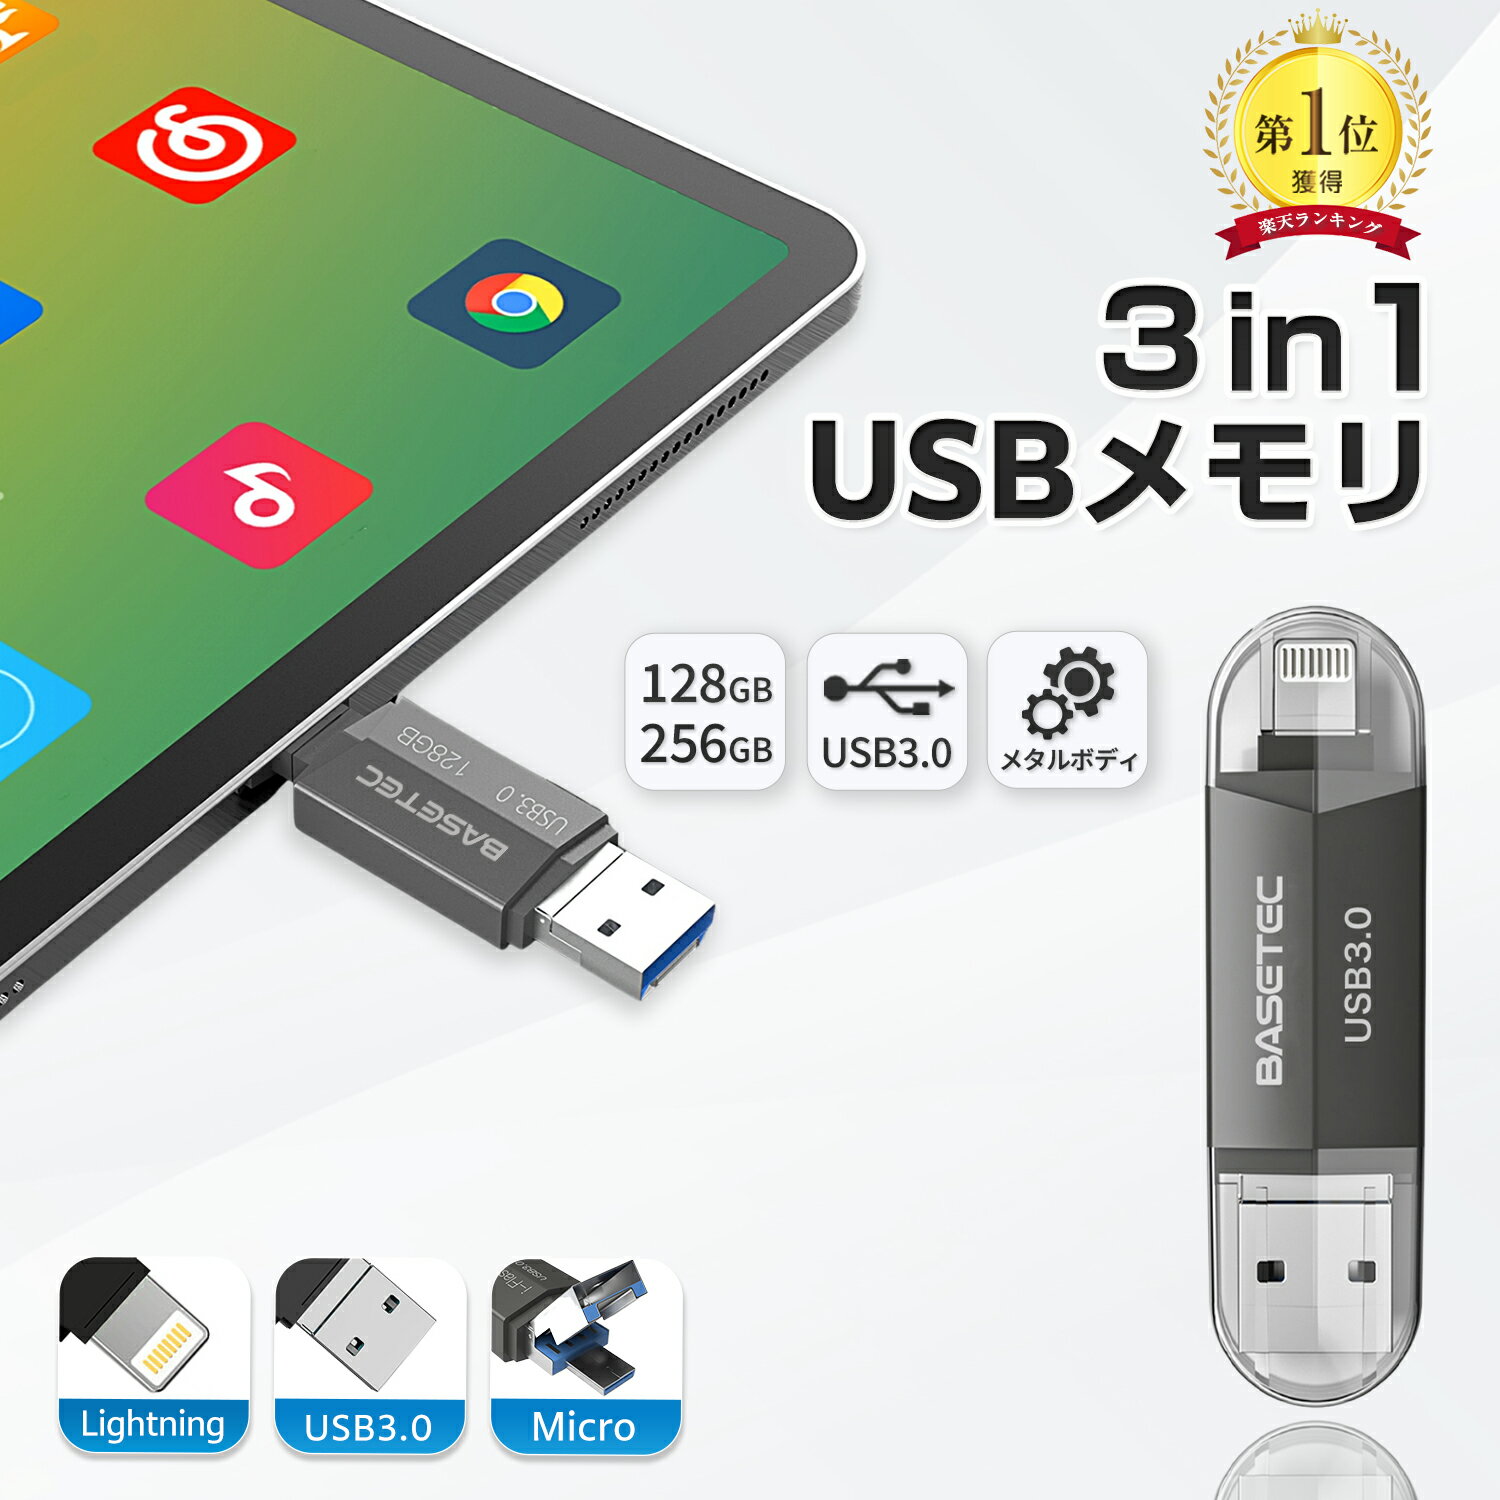 【本日限定200円OFFクーポン】3in1 USB